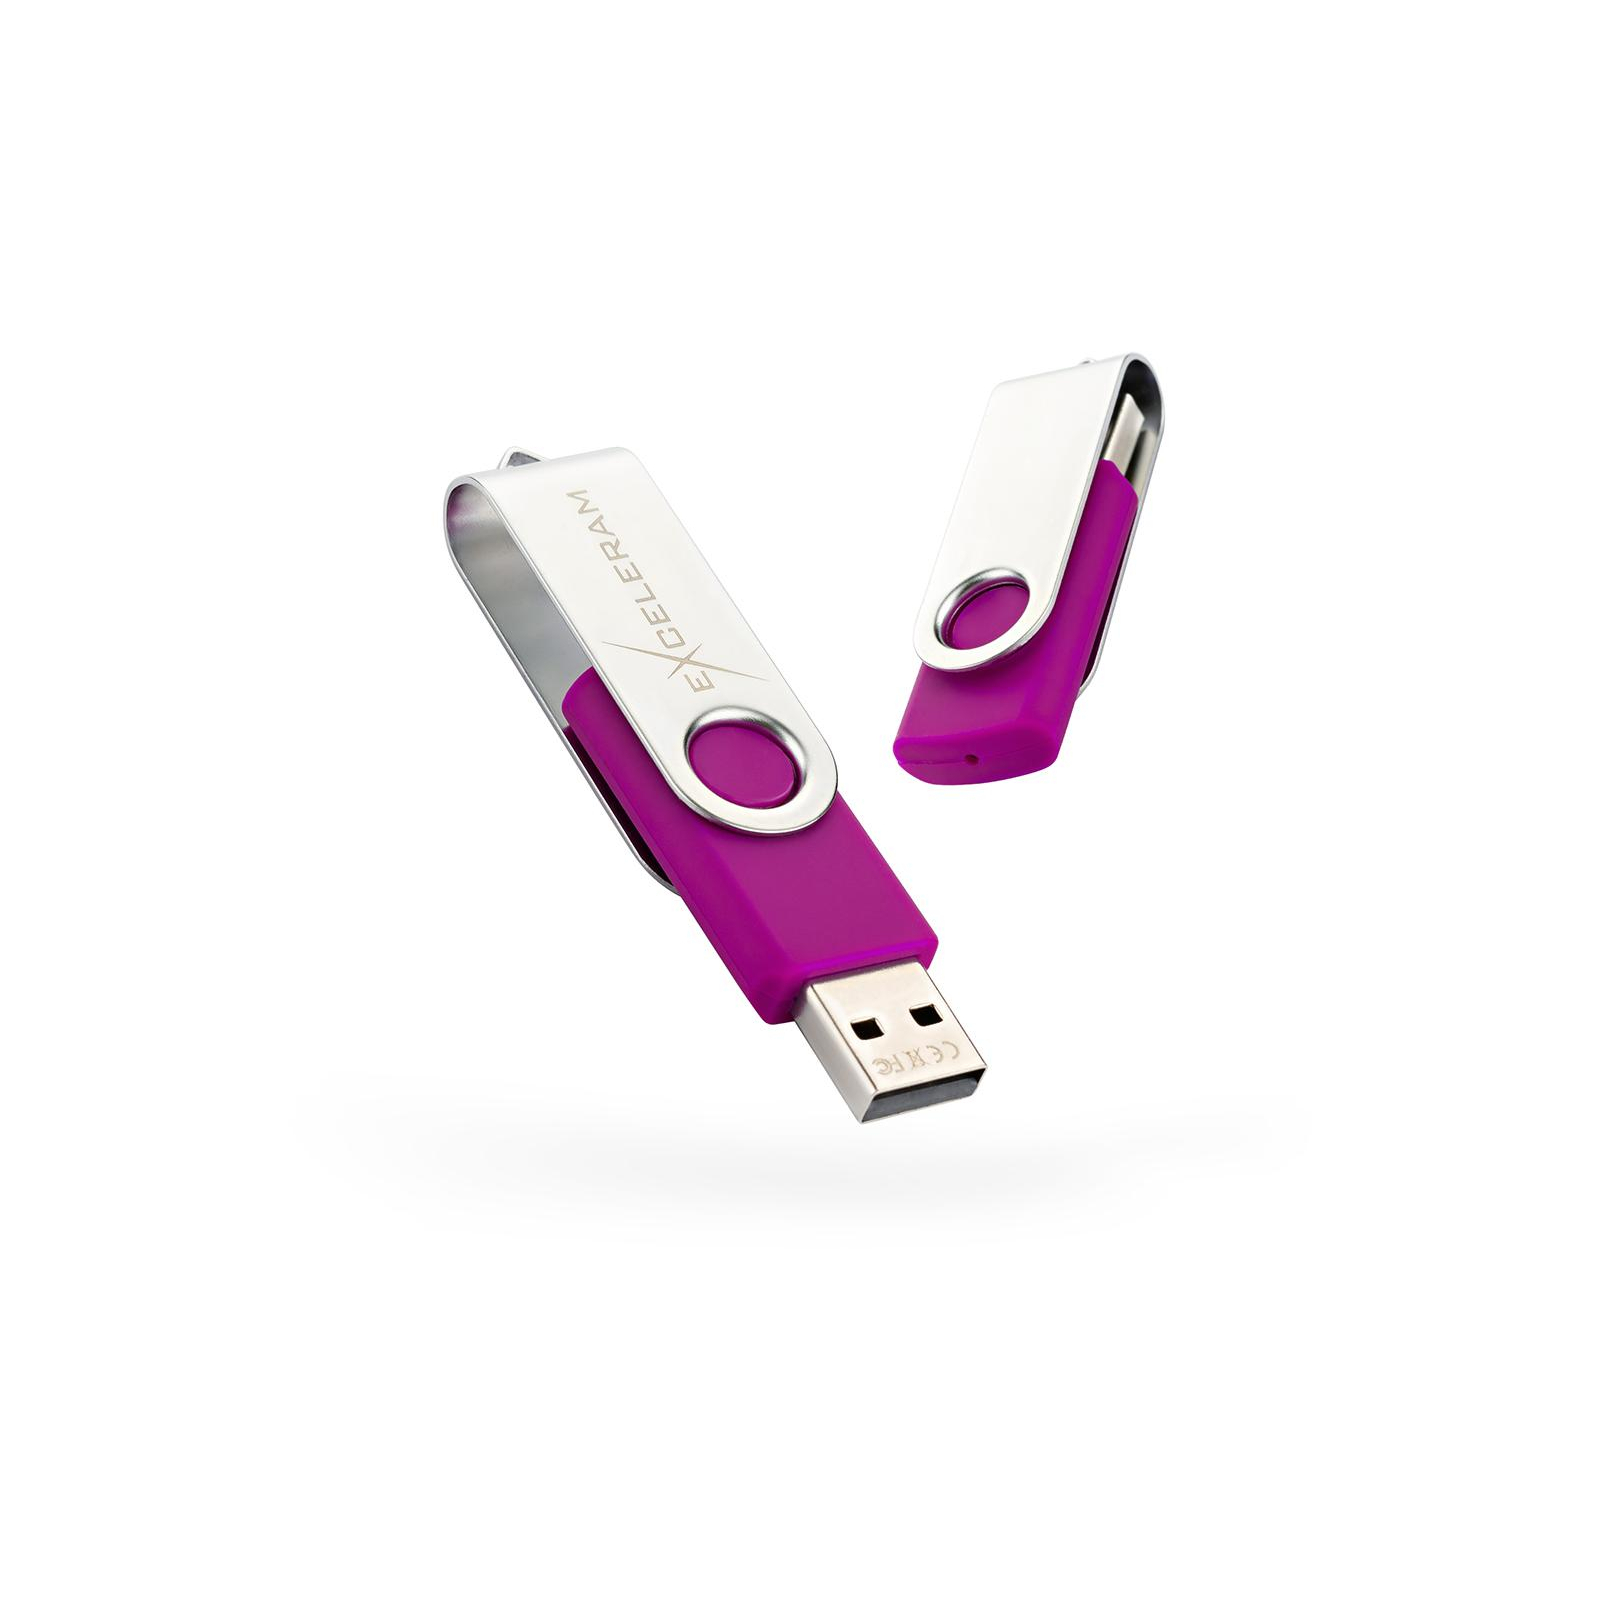 USB флеш накопичувач eXceleram 8GB P1 Series Silver/Gray USB 2.0 (EXP1U2SIG08)